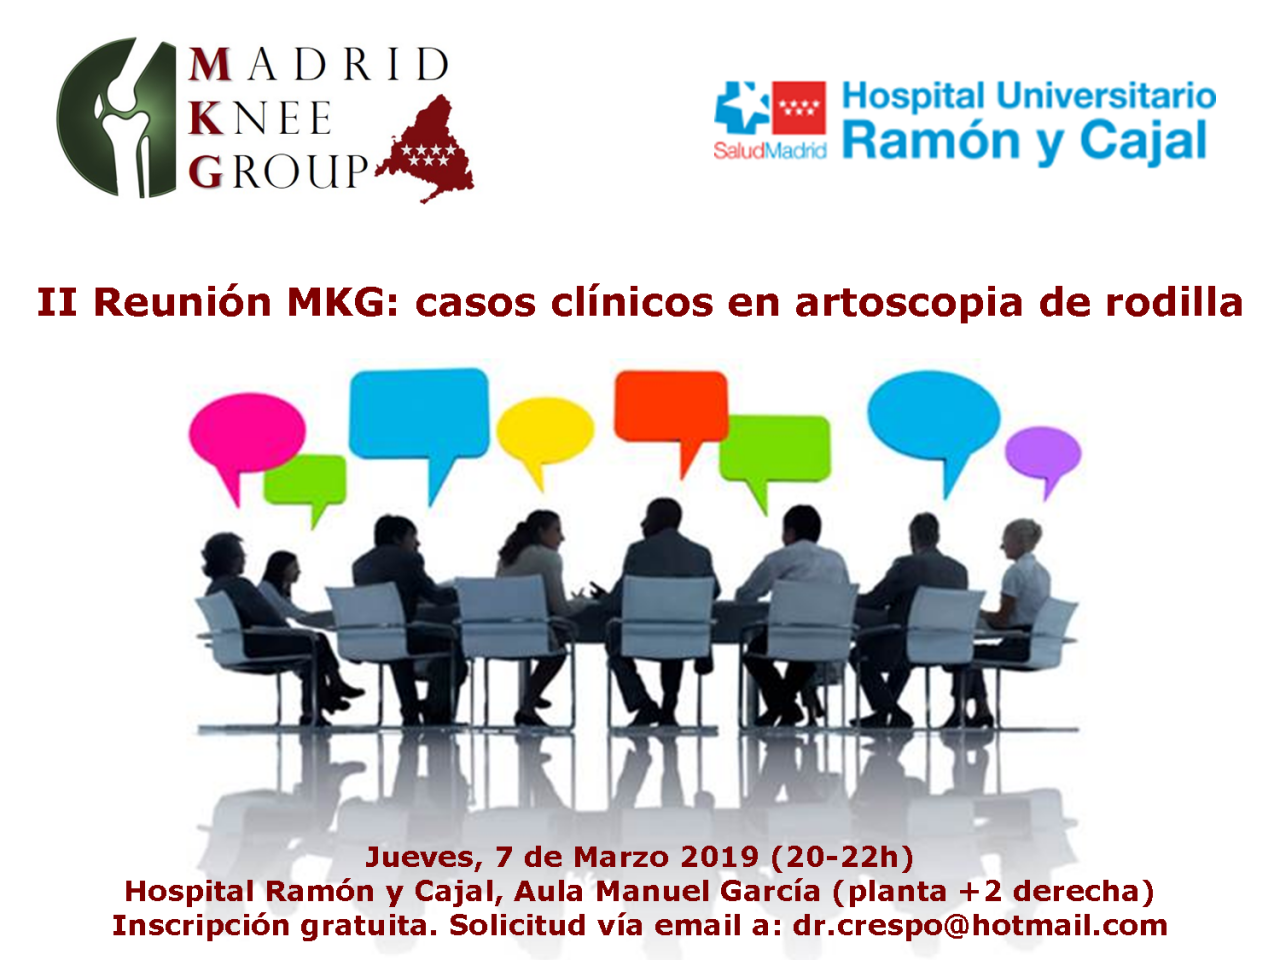 Tras el éxito de la primera reunión del Madrid Knee Group (MKG) los organizadores convocan ahora un segundo encuentro